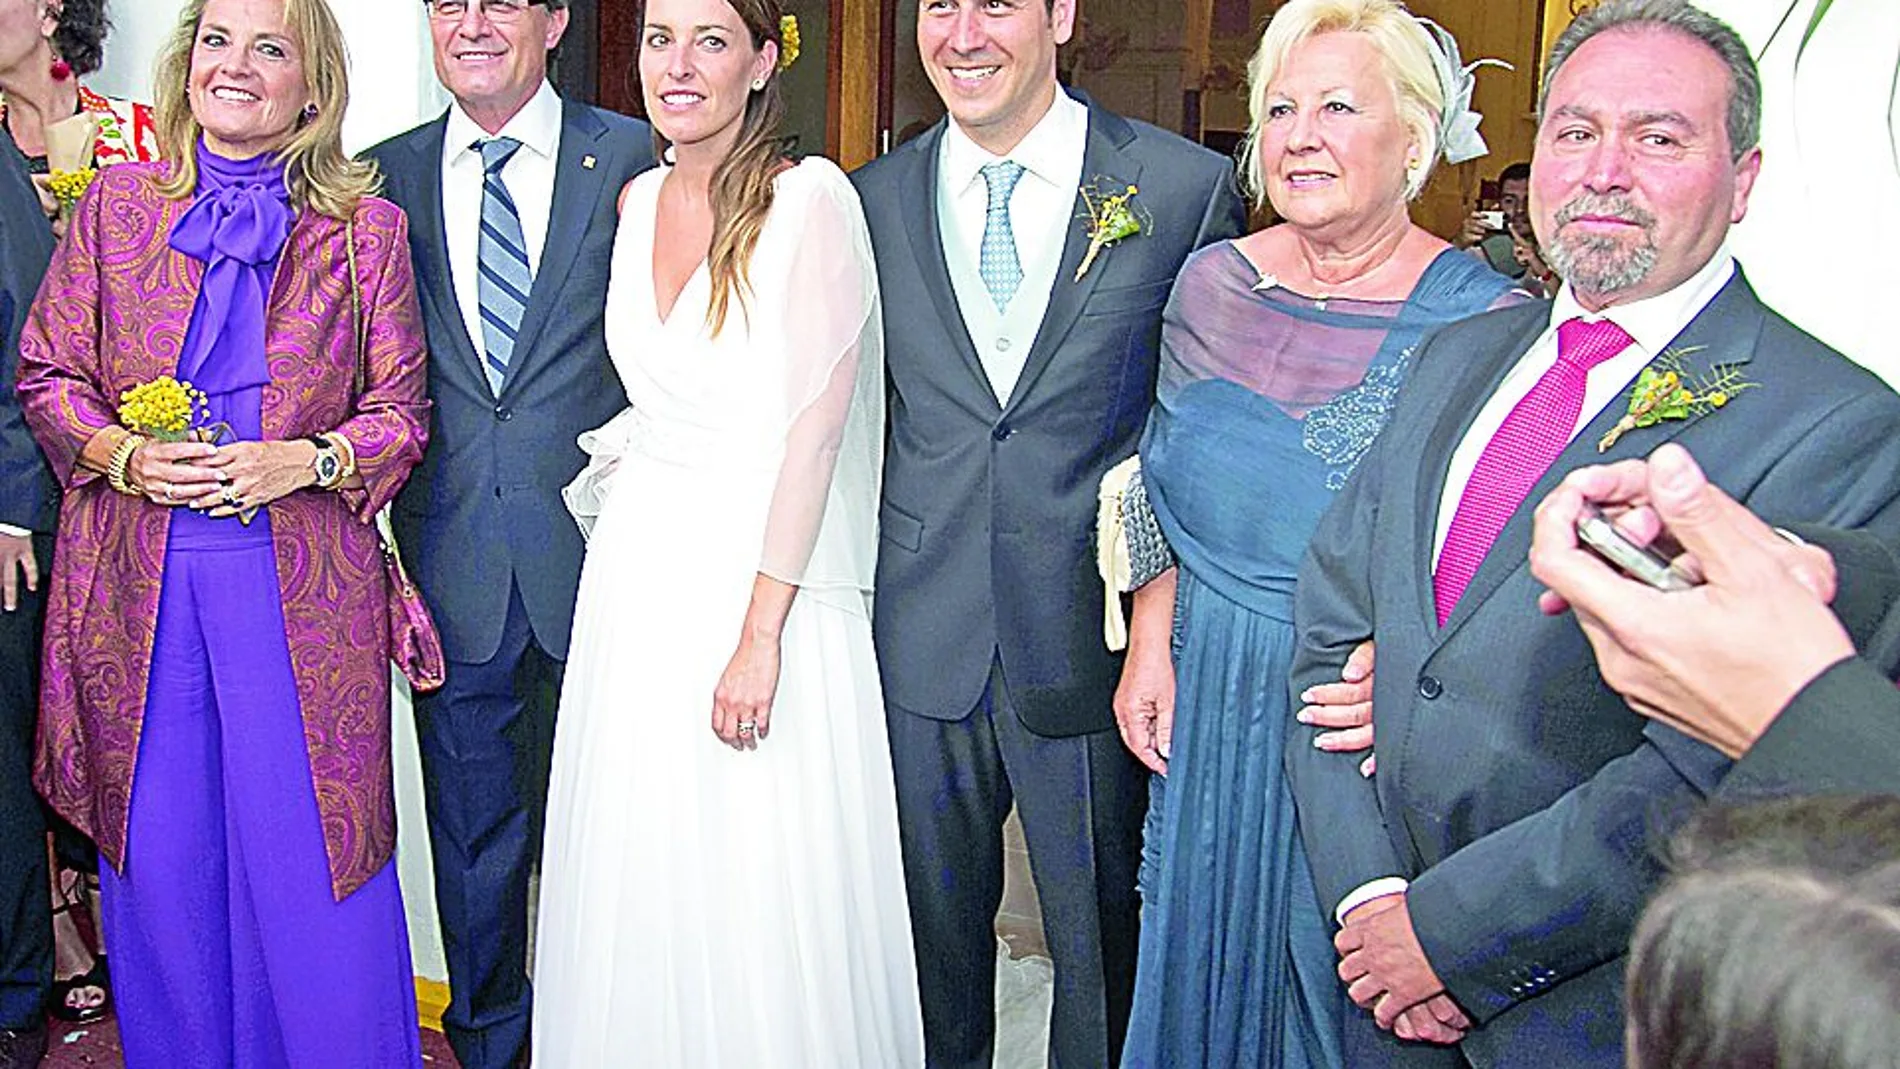 Patricia Mas y Rubén Torrico, en la imagen con sus padres, se casaron en el verano de 2013 tras conocerse en Reino unido en un viaje de estudios